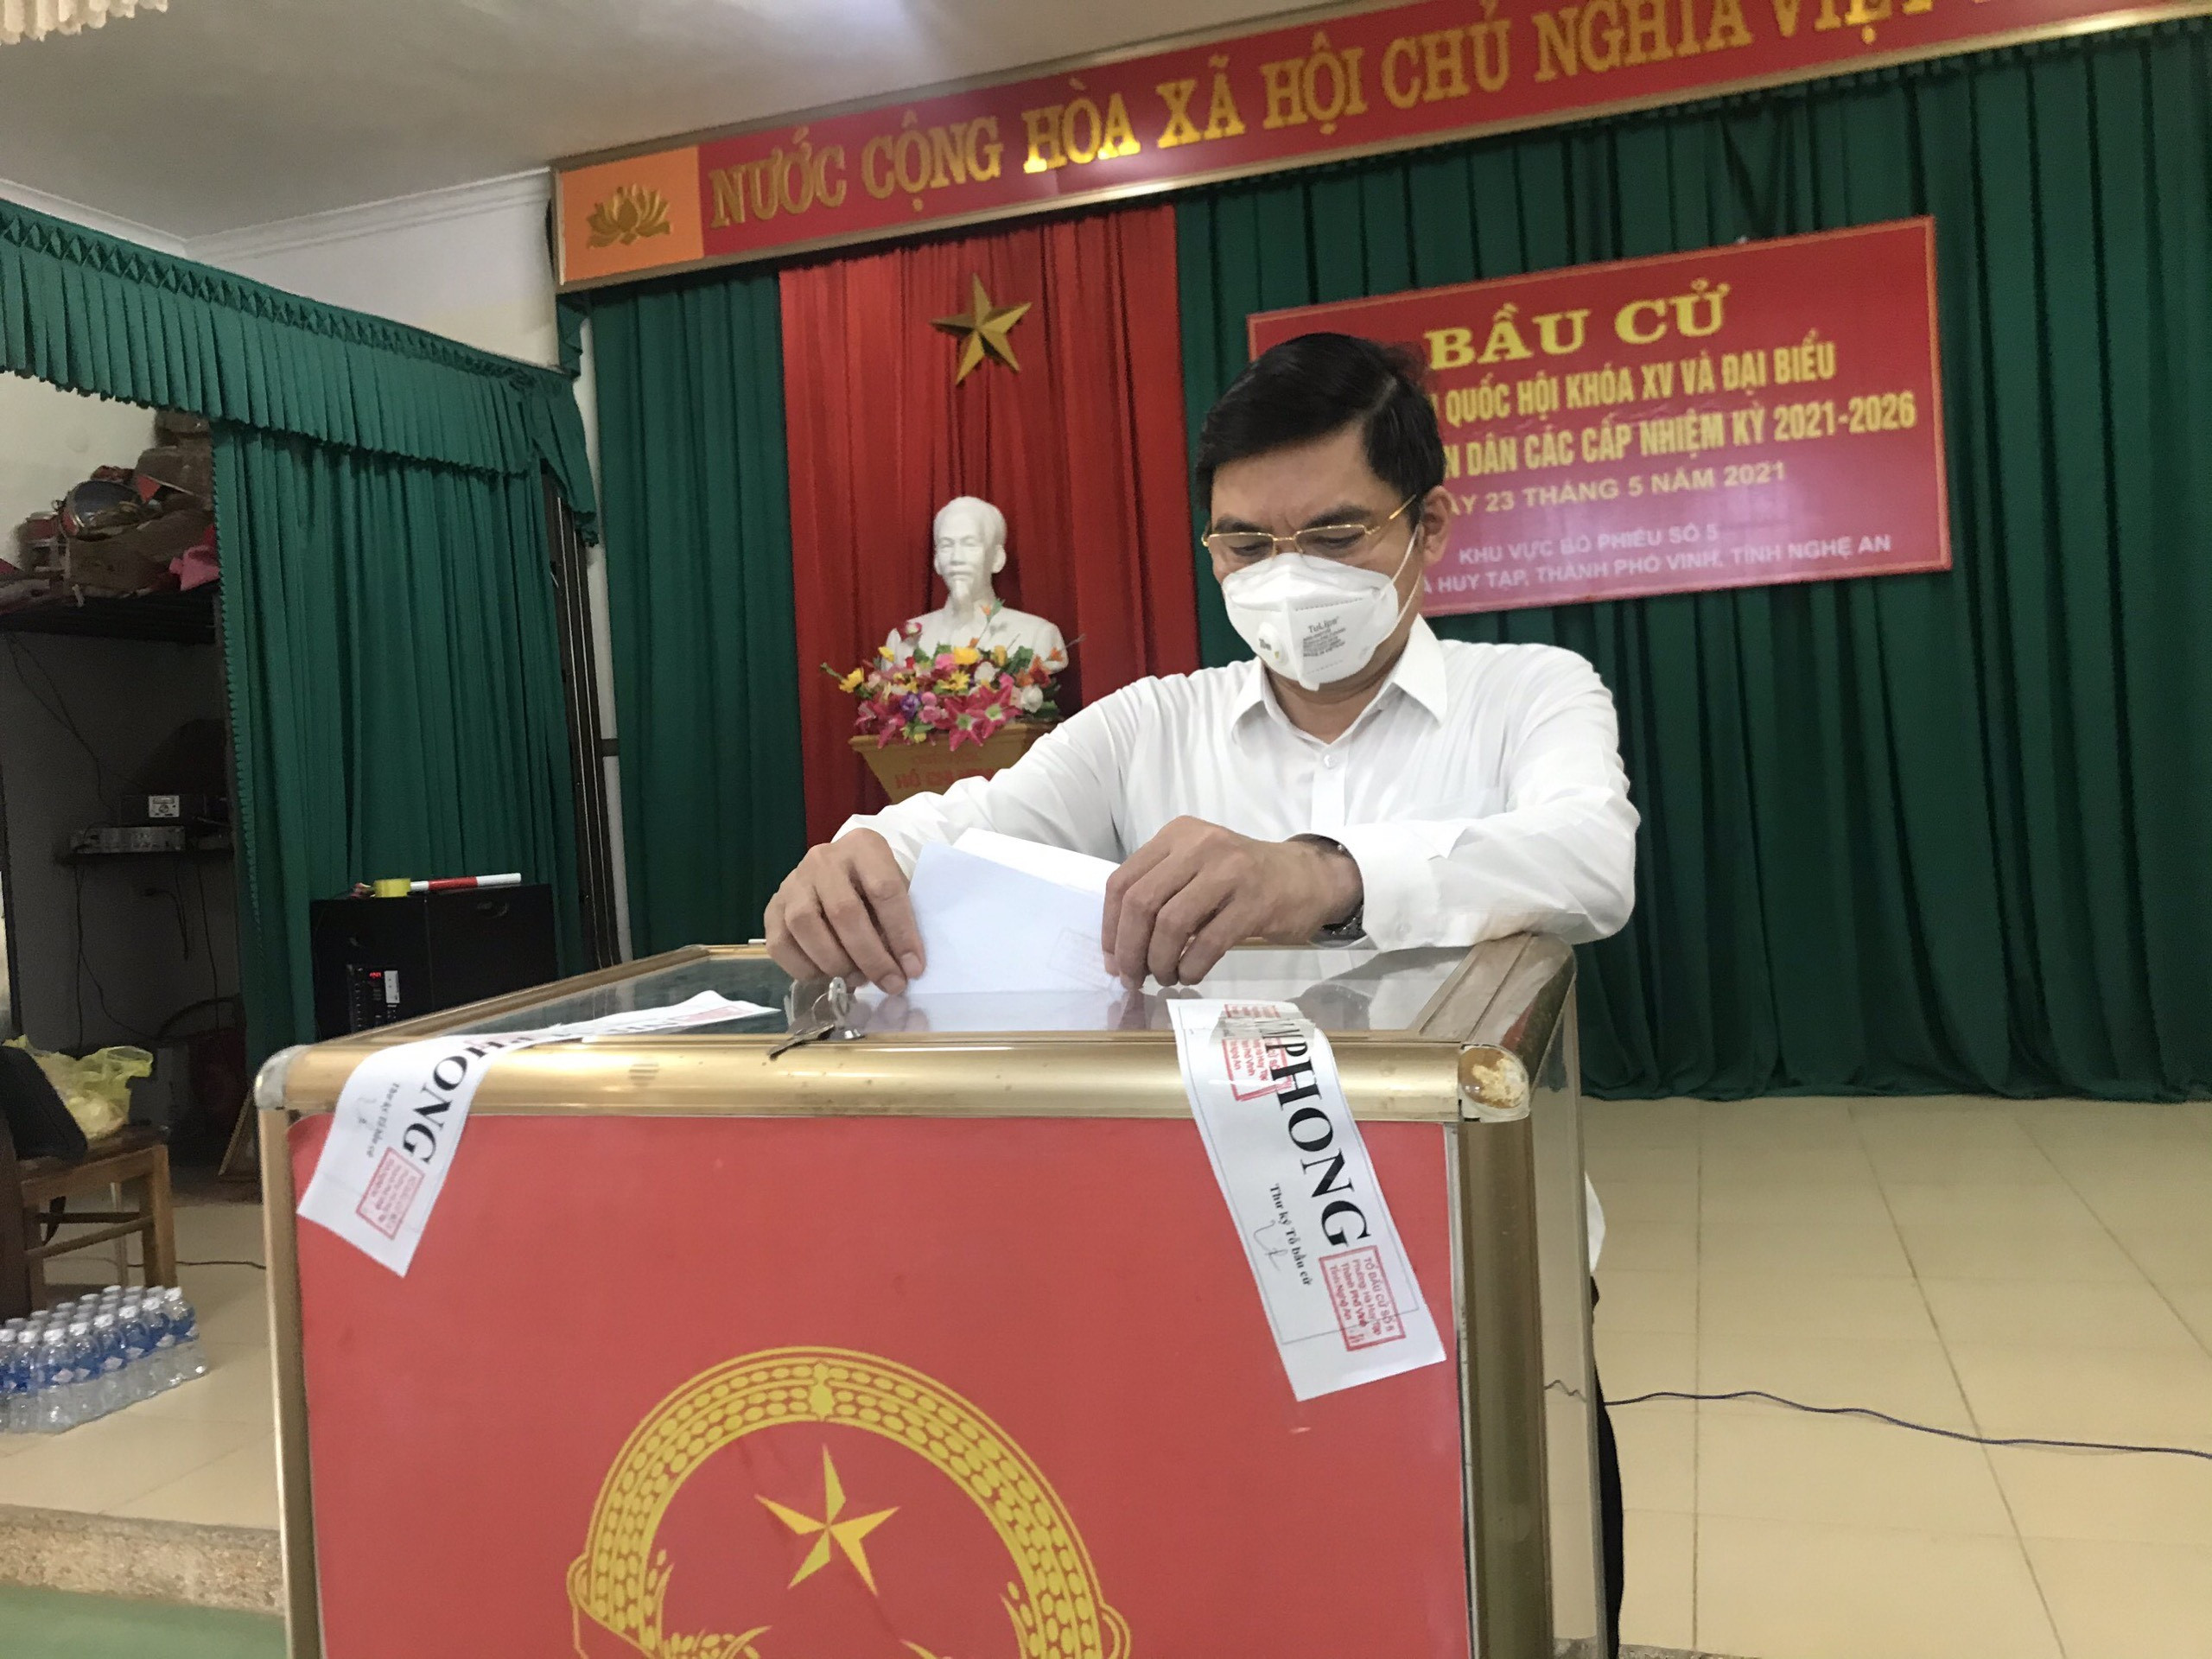 Phó Chủ tịch UBND tỉnh Hoàng Nghĩa Hiếu đã cùng các cử tri cao tuổi, cử tri là người có công với cách mạng bỏ những lá phiếu đầu tiên. Ảnh Phú Hương